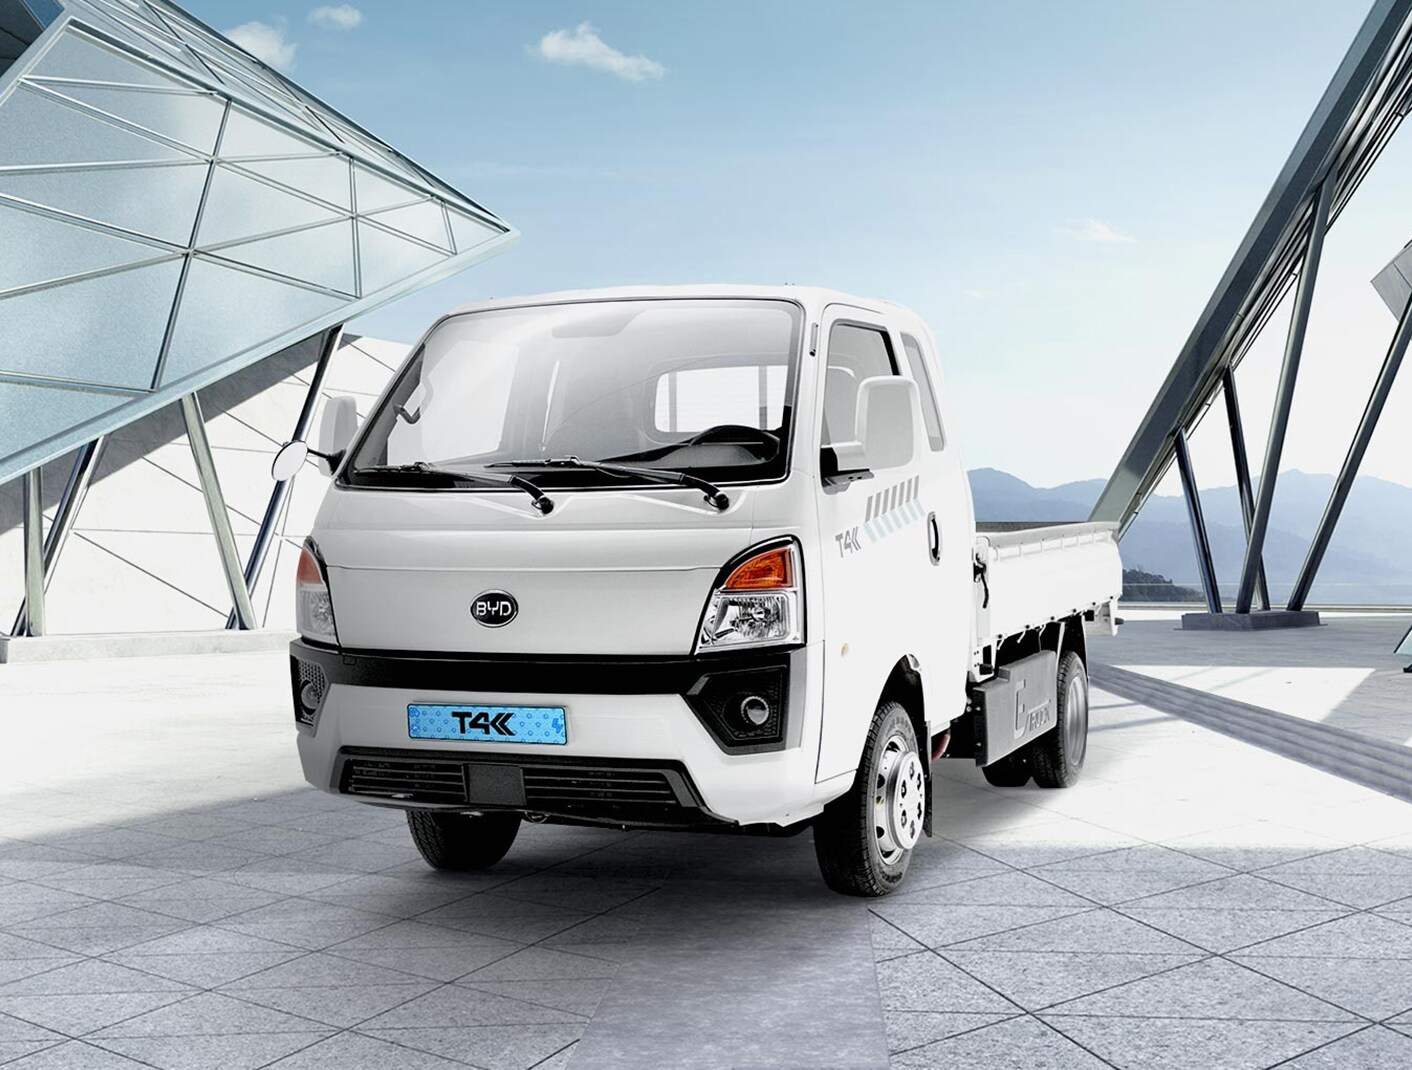 Hankook Tire suministra llantas en equipo original para el modelo de camión eléctrico T4K de BYD.